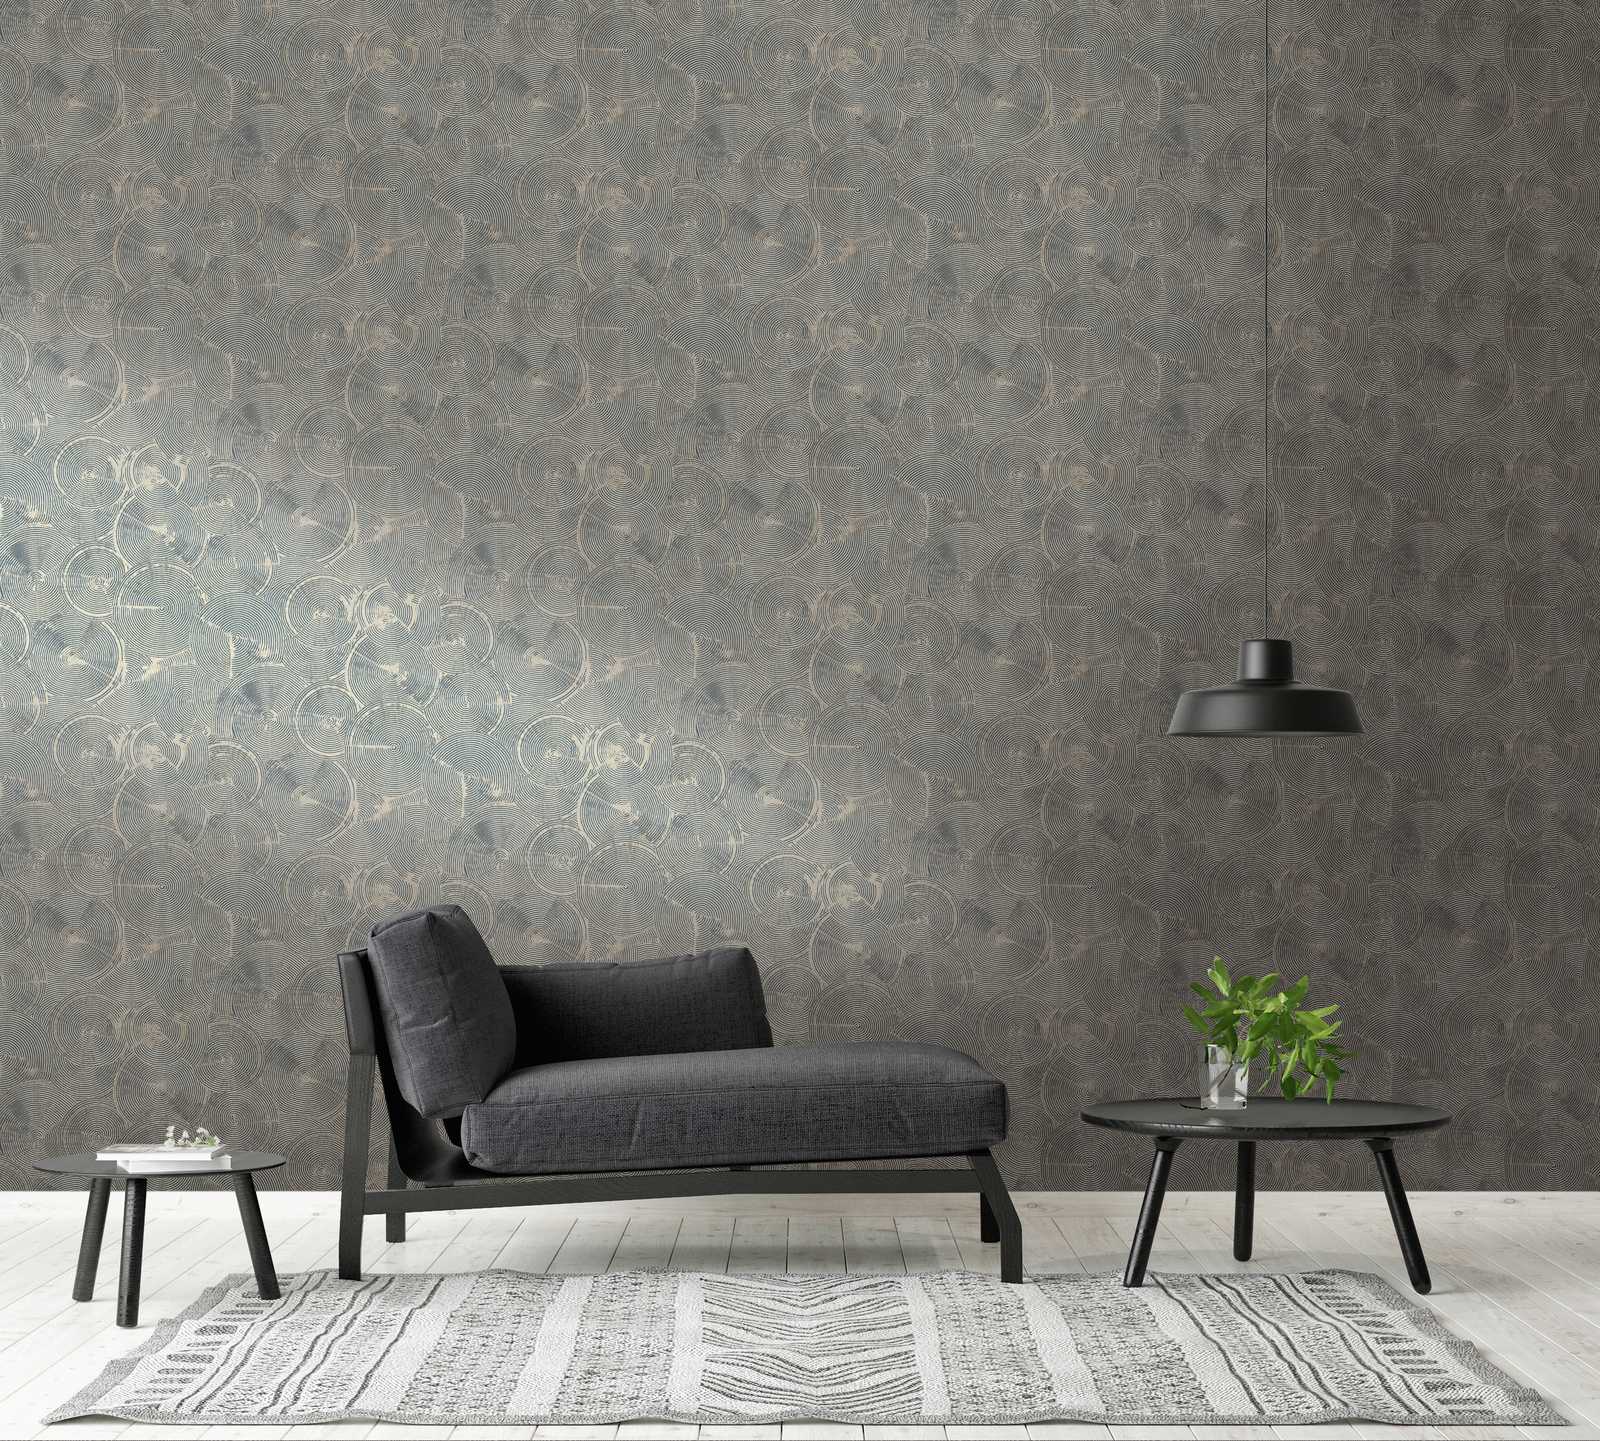             behang moderne gipslook met metallic effect - bruin, metallic, zwart
        